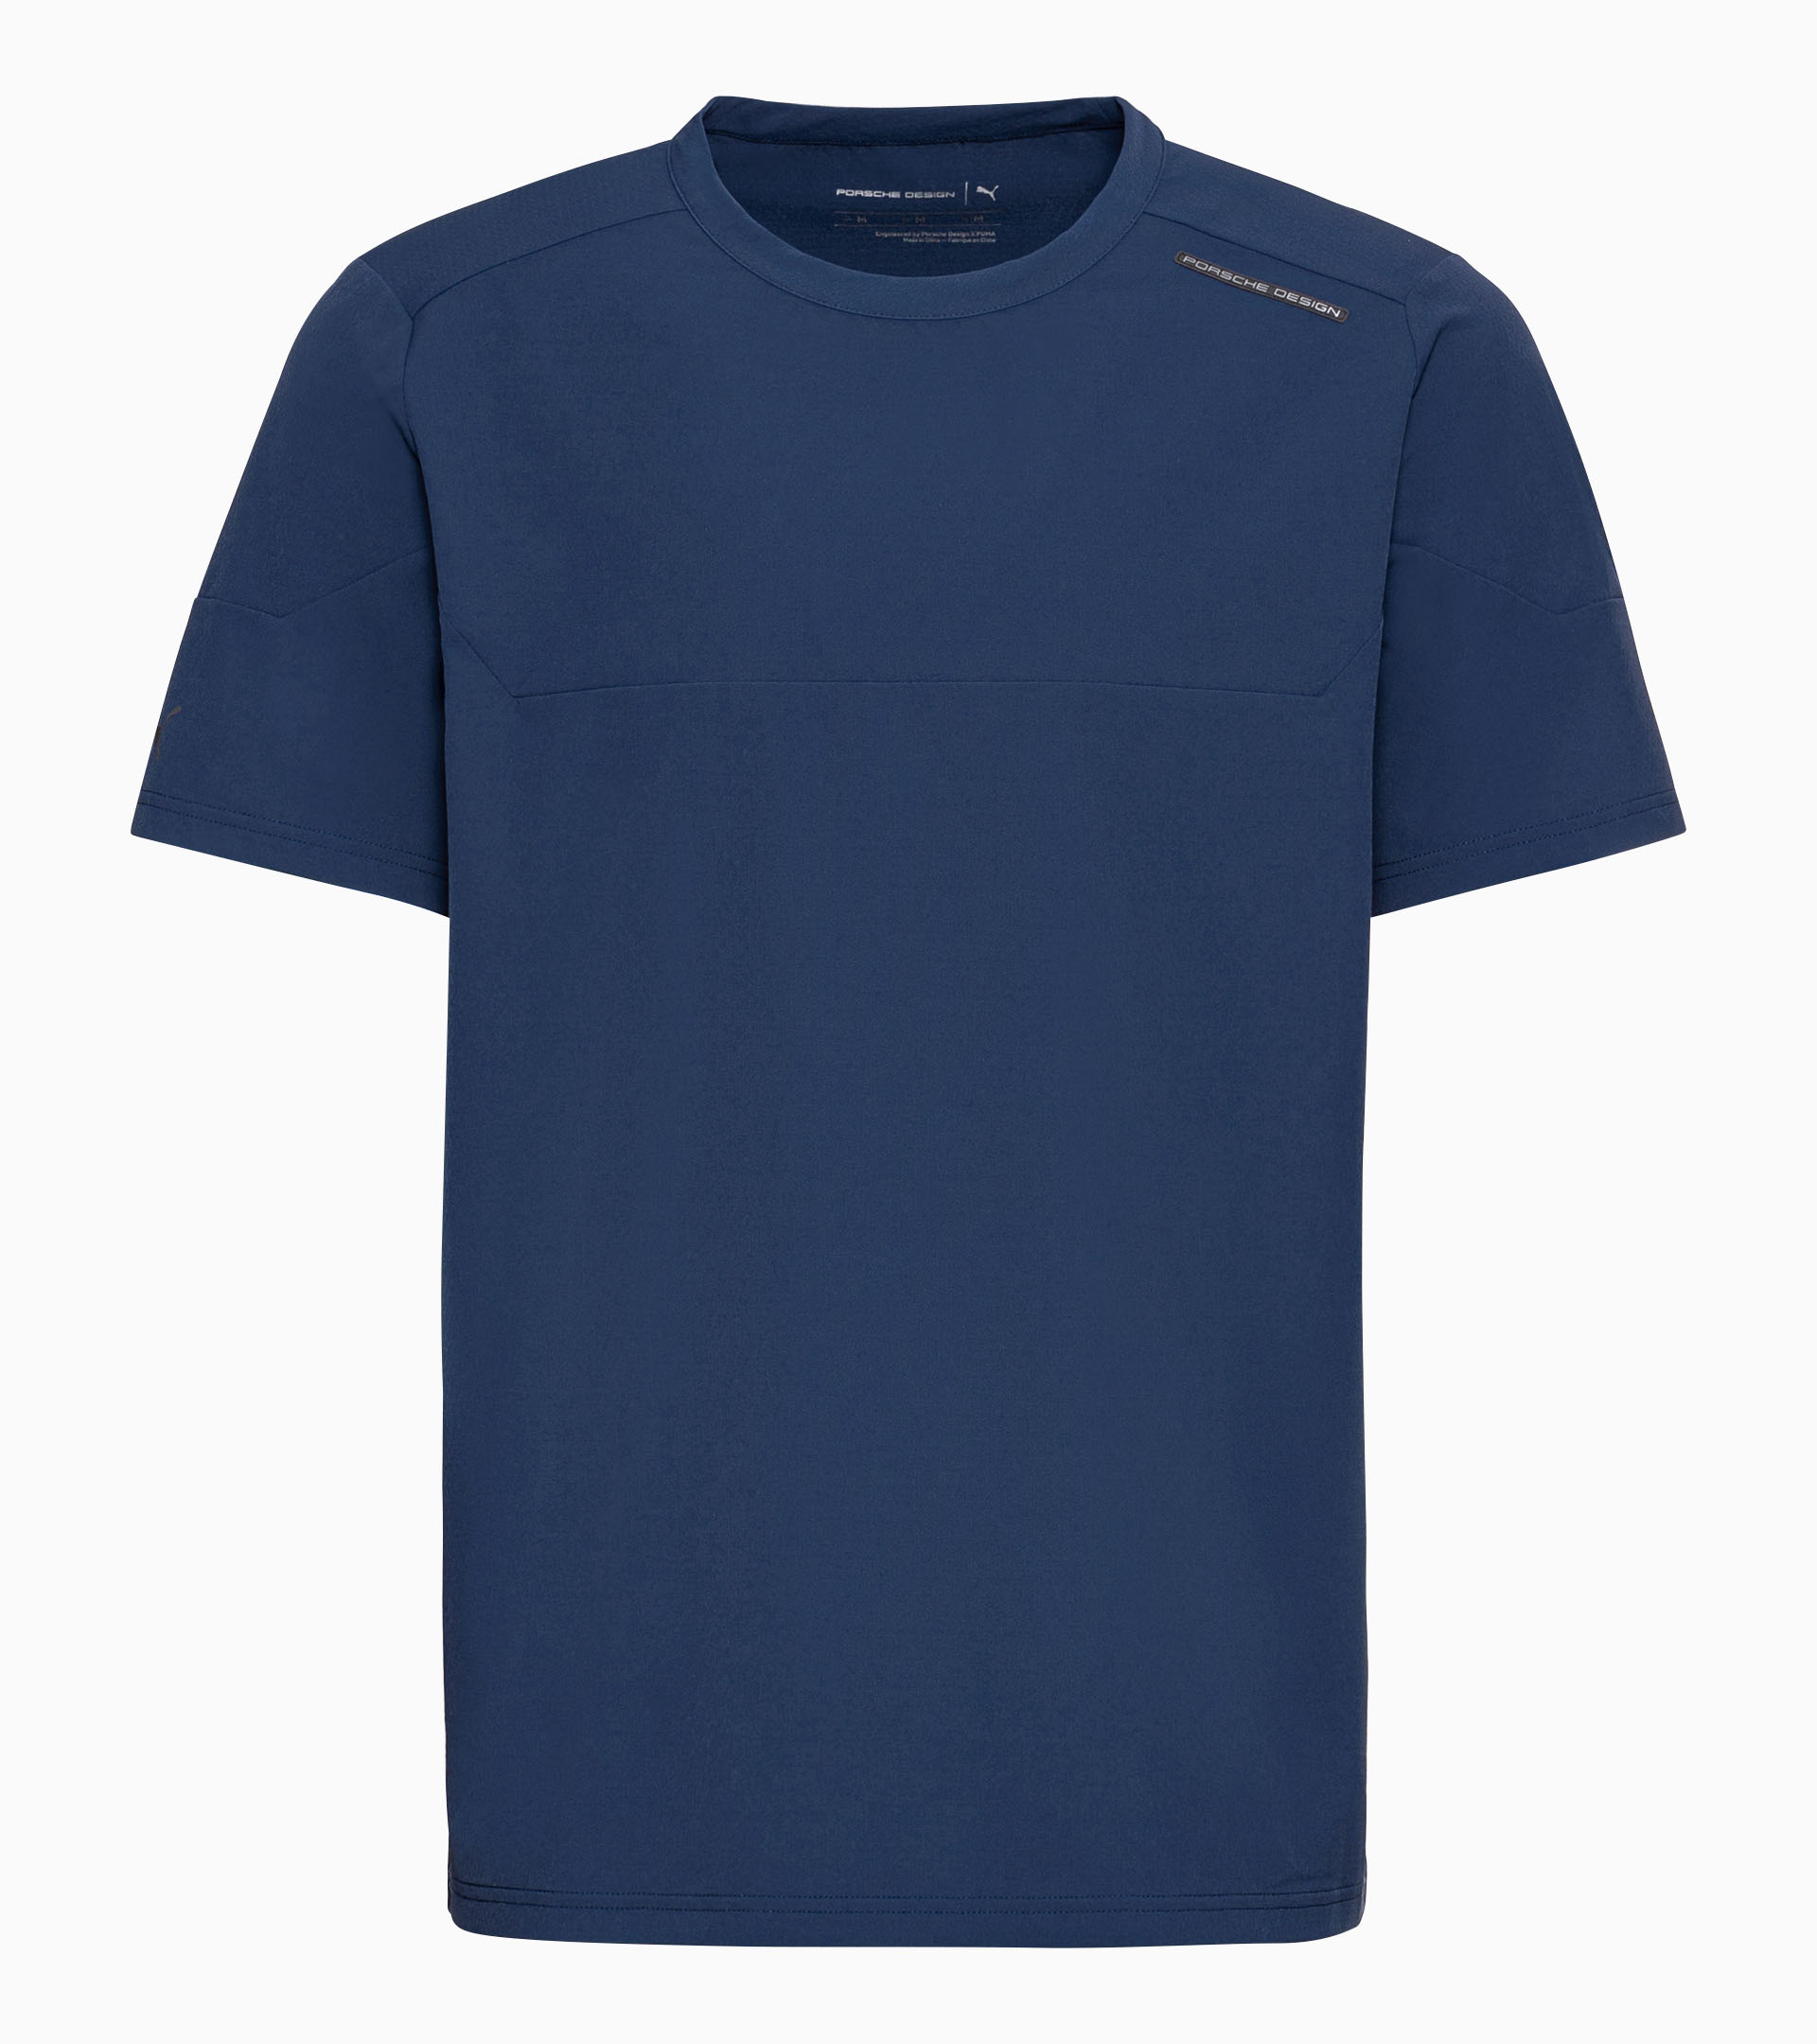 Active T-shirt - Exclusive Sports Polo & T-Shirts for Men, Porsche Design